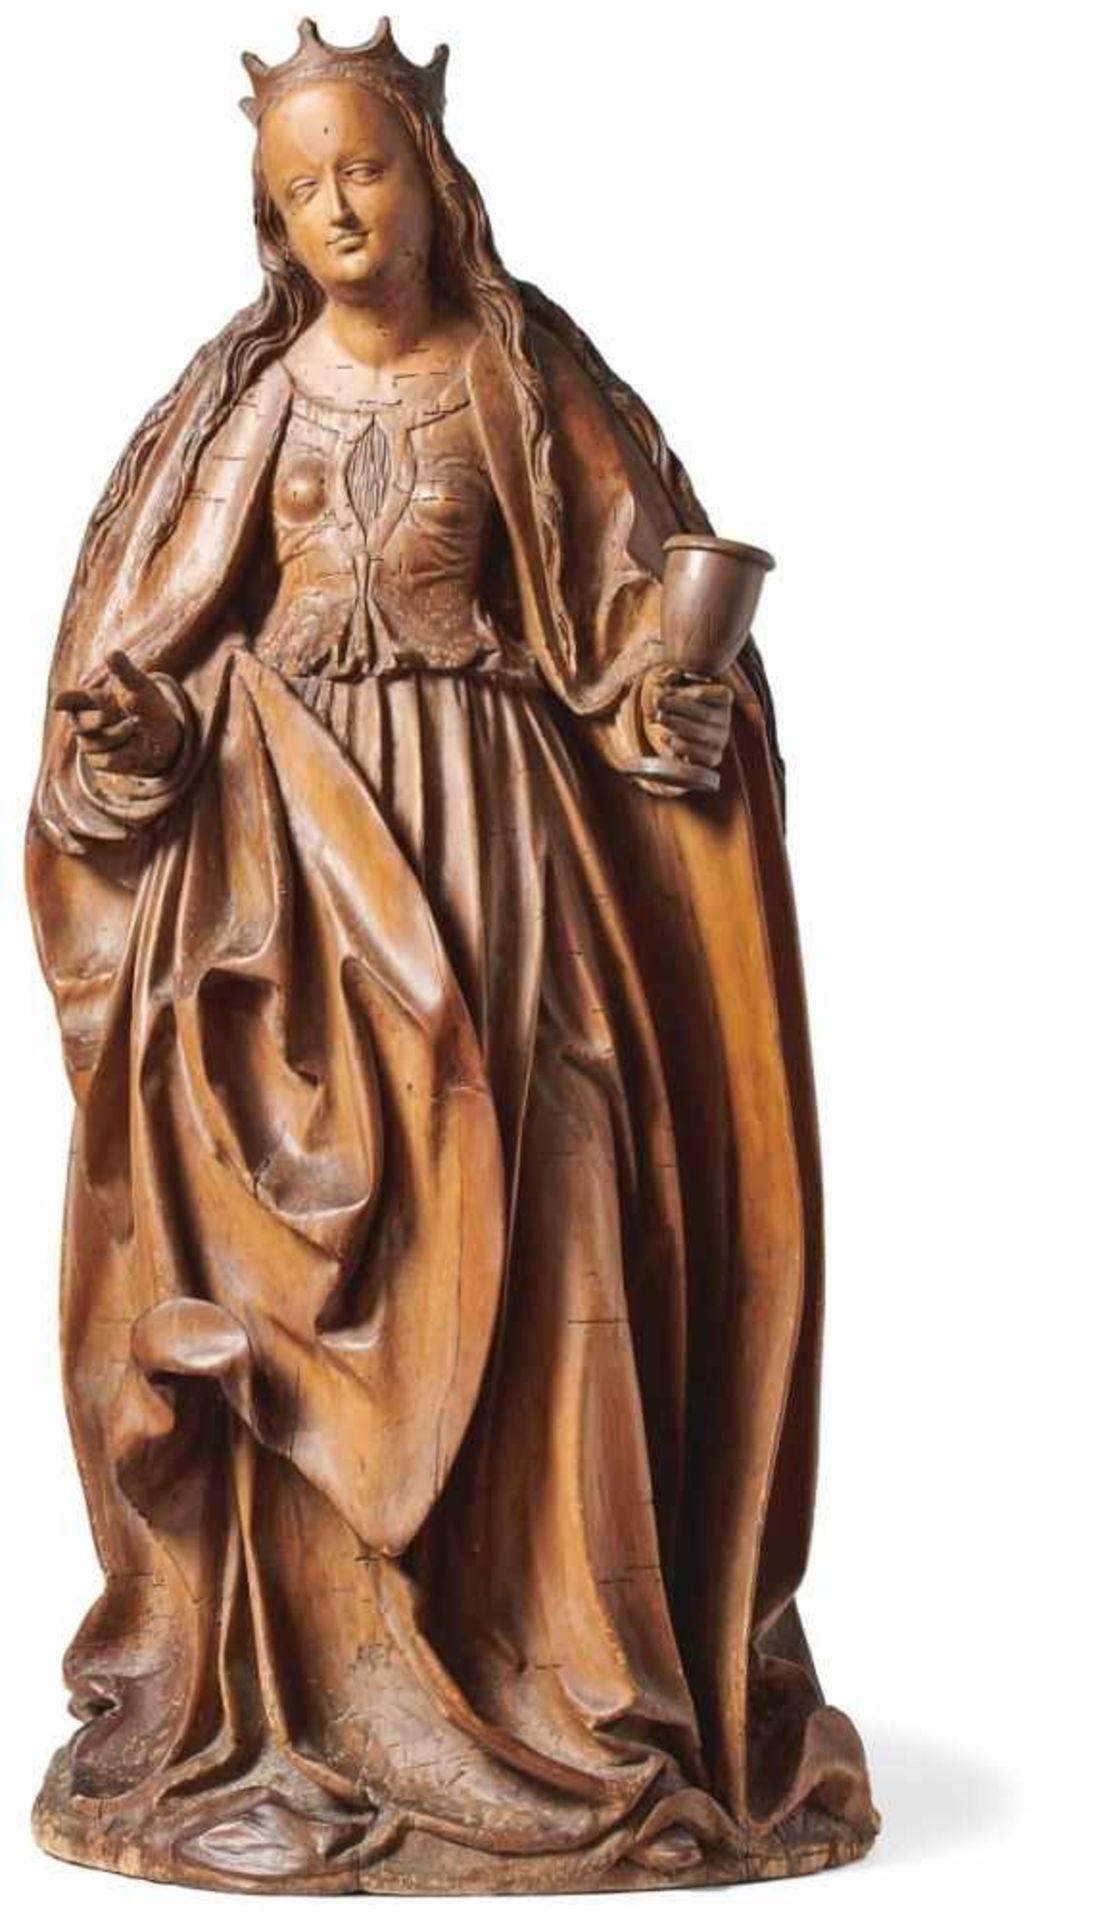 Heilige BarbaraPassauer Meister, um 1510Stehende Heilige in faltenreichem Gewand, das bekrönte Haupt